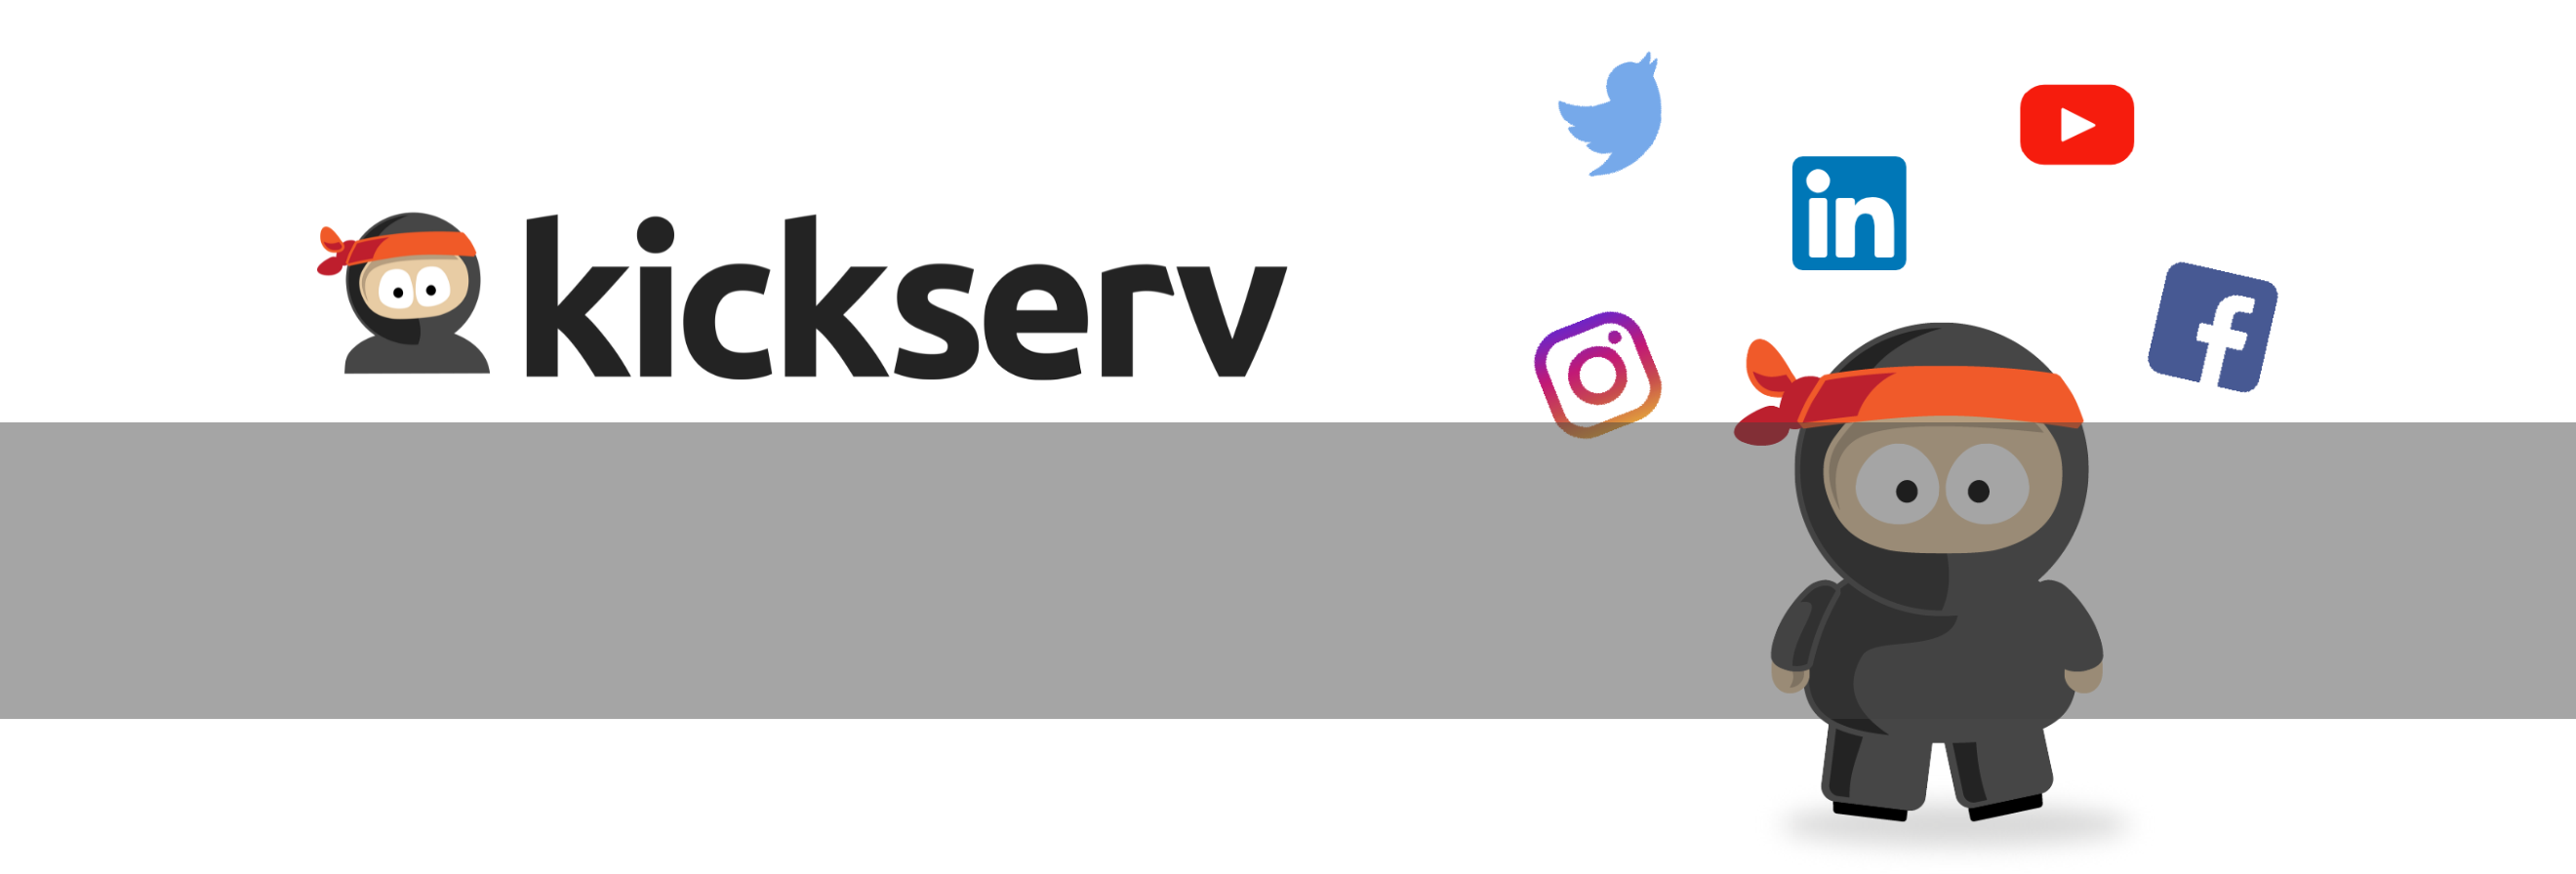 Kickserv on Social Media